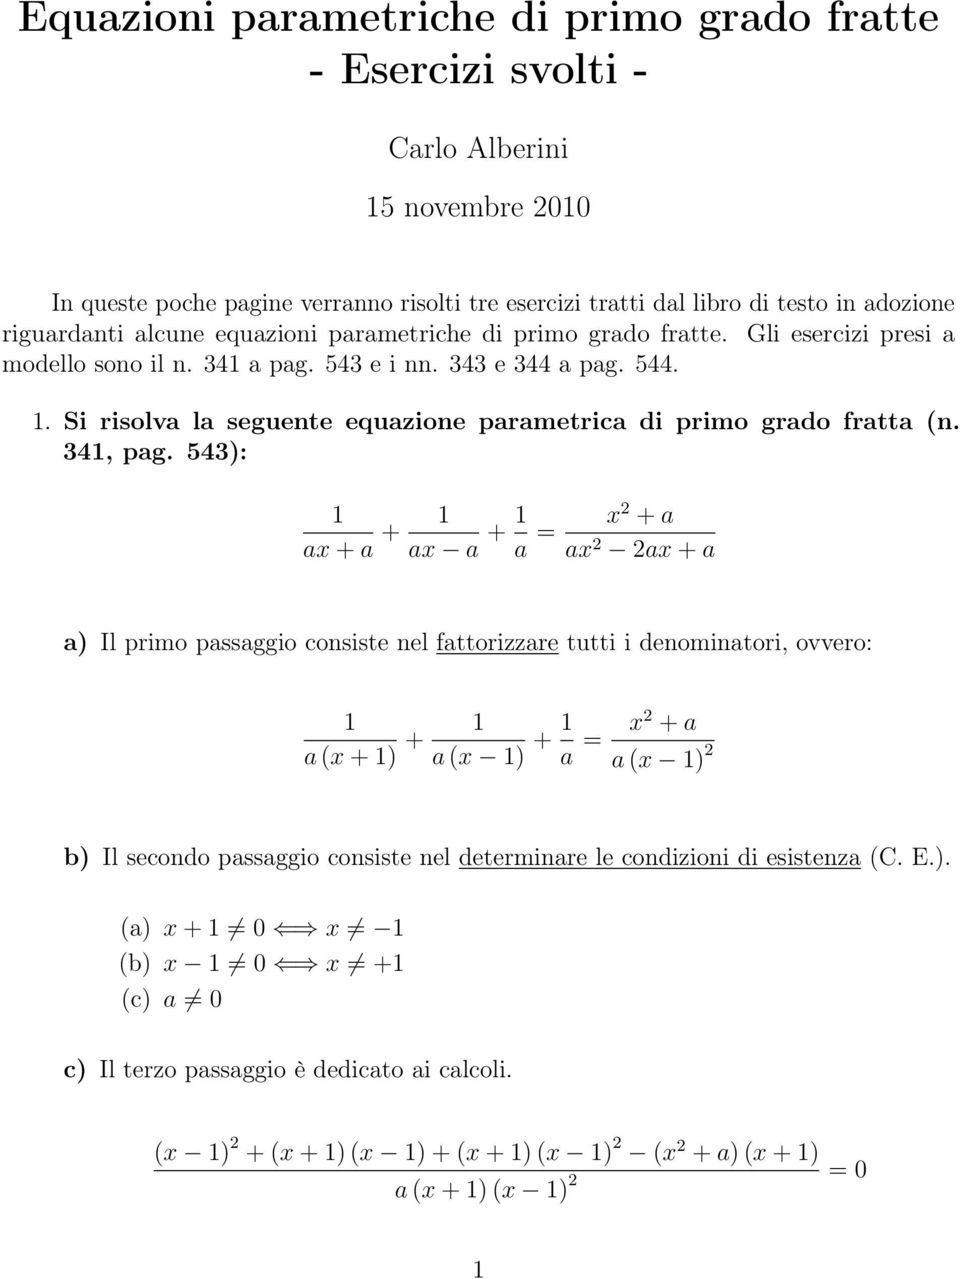 Si risolva la seguente equazione parametrica di primo grado fratta (n. 341, pag.